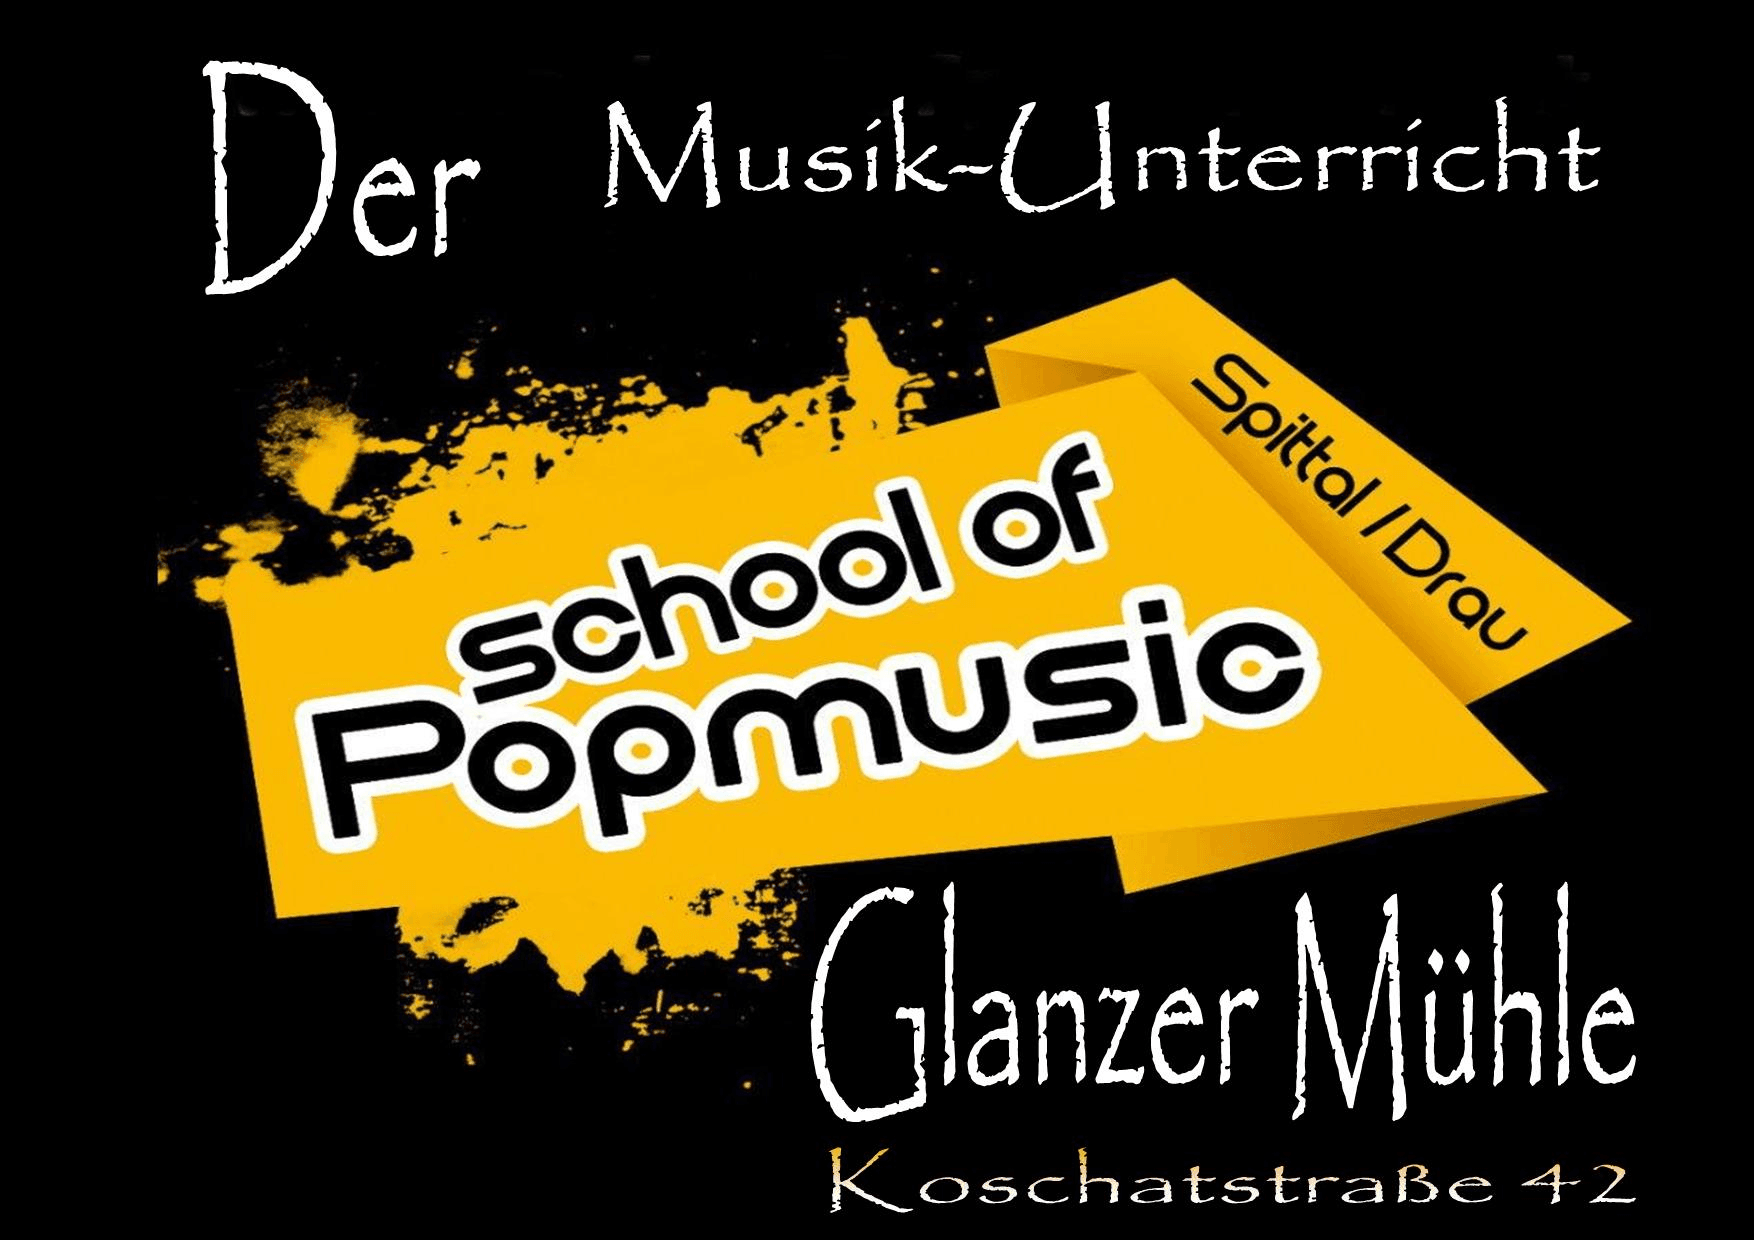 Vorschau - Foto 7 von School of Popmusic Spittal, S.O.P. - Büro S. Petritz / Unterricht Koschatstraße 42- Eingang Badgasse 5